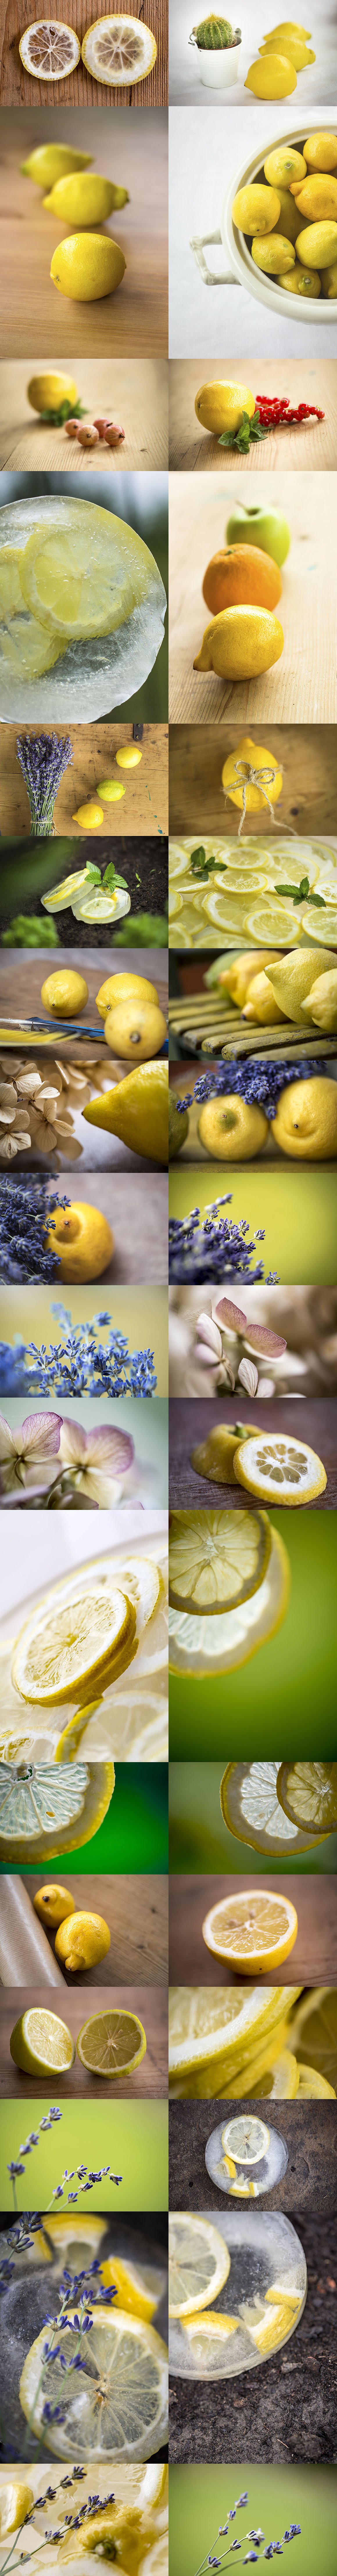 柠檬特写镜头高清照片素材 Fresh Lemon – Photos & Graphics插图(12)